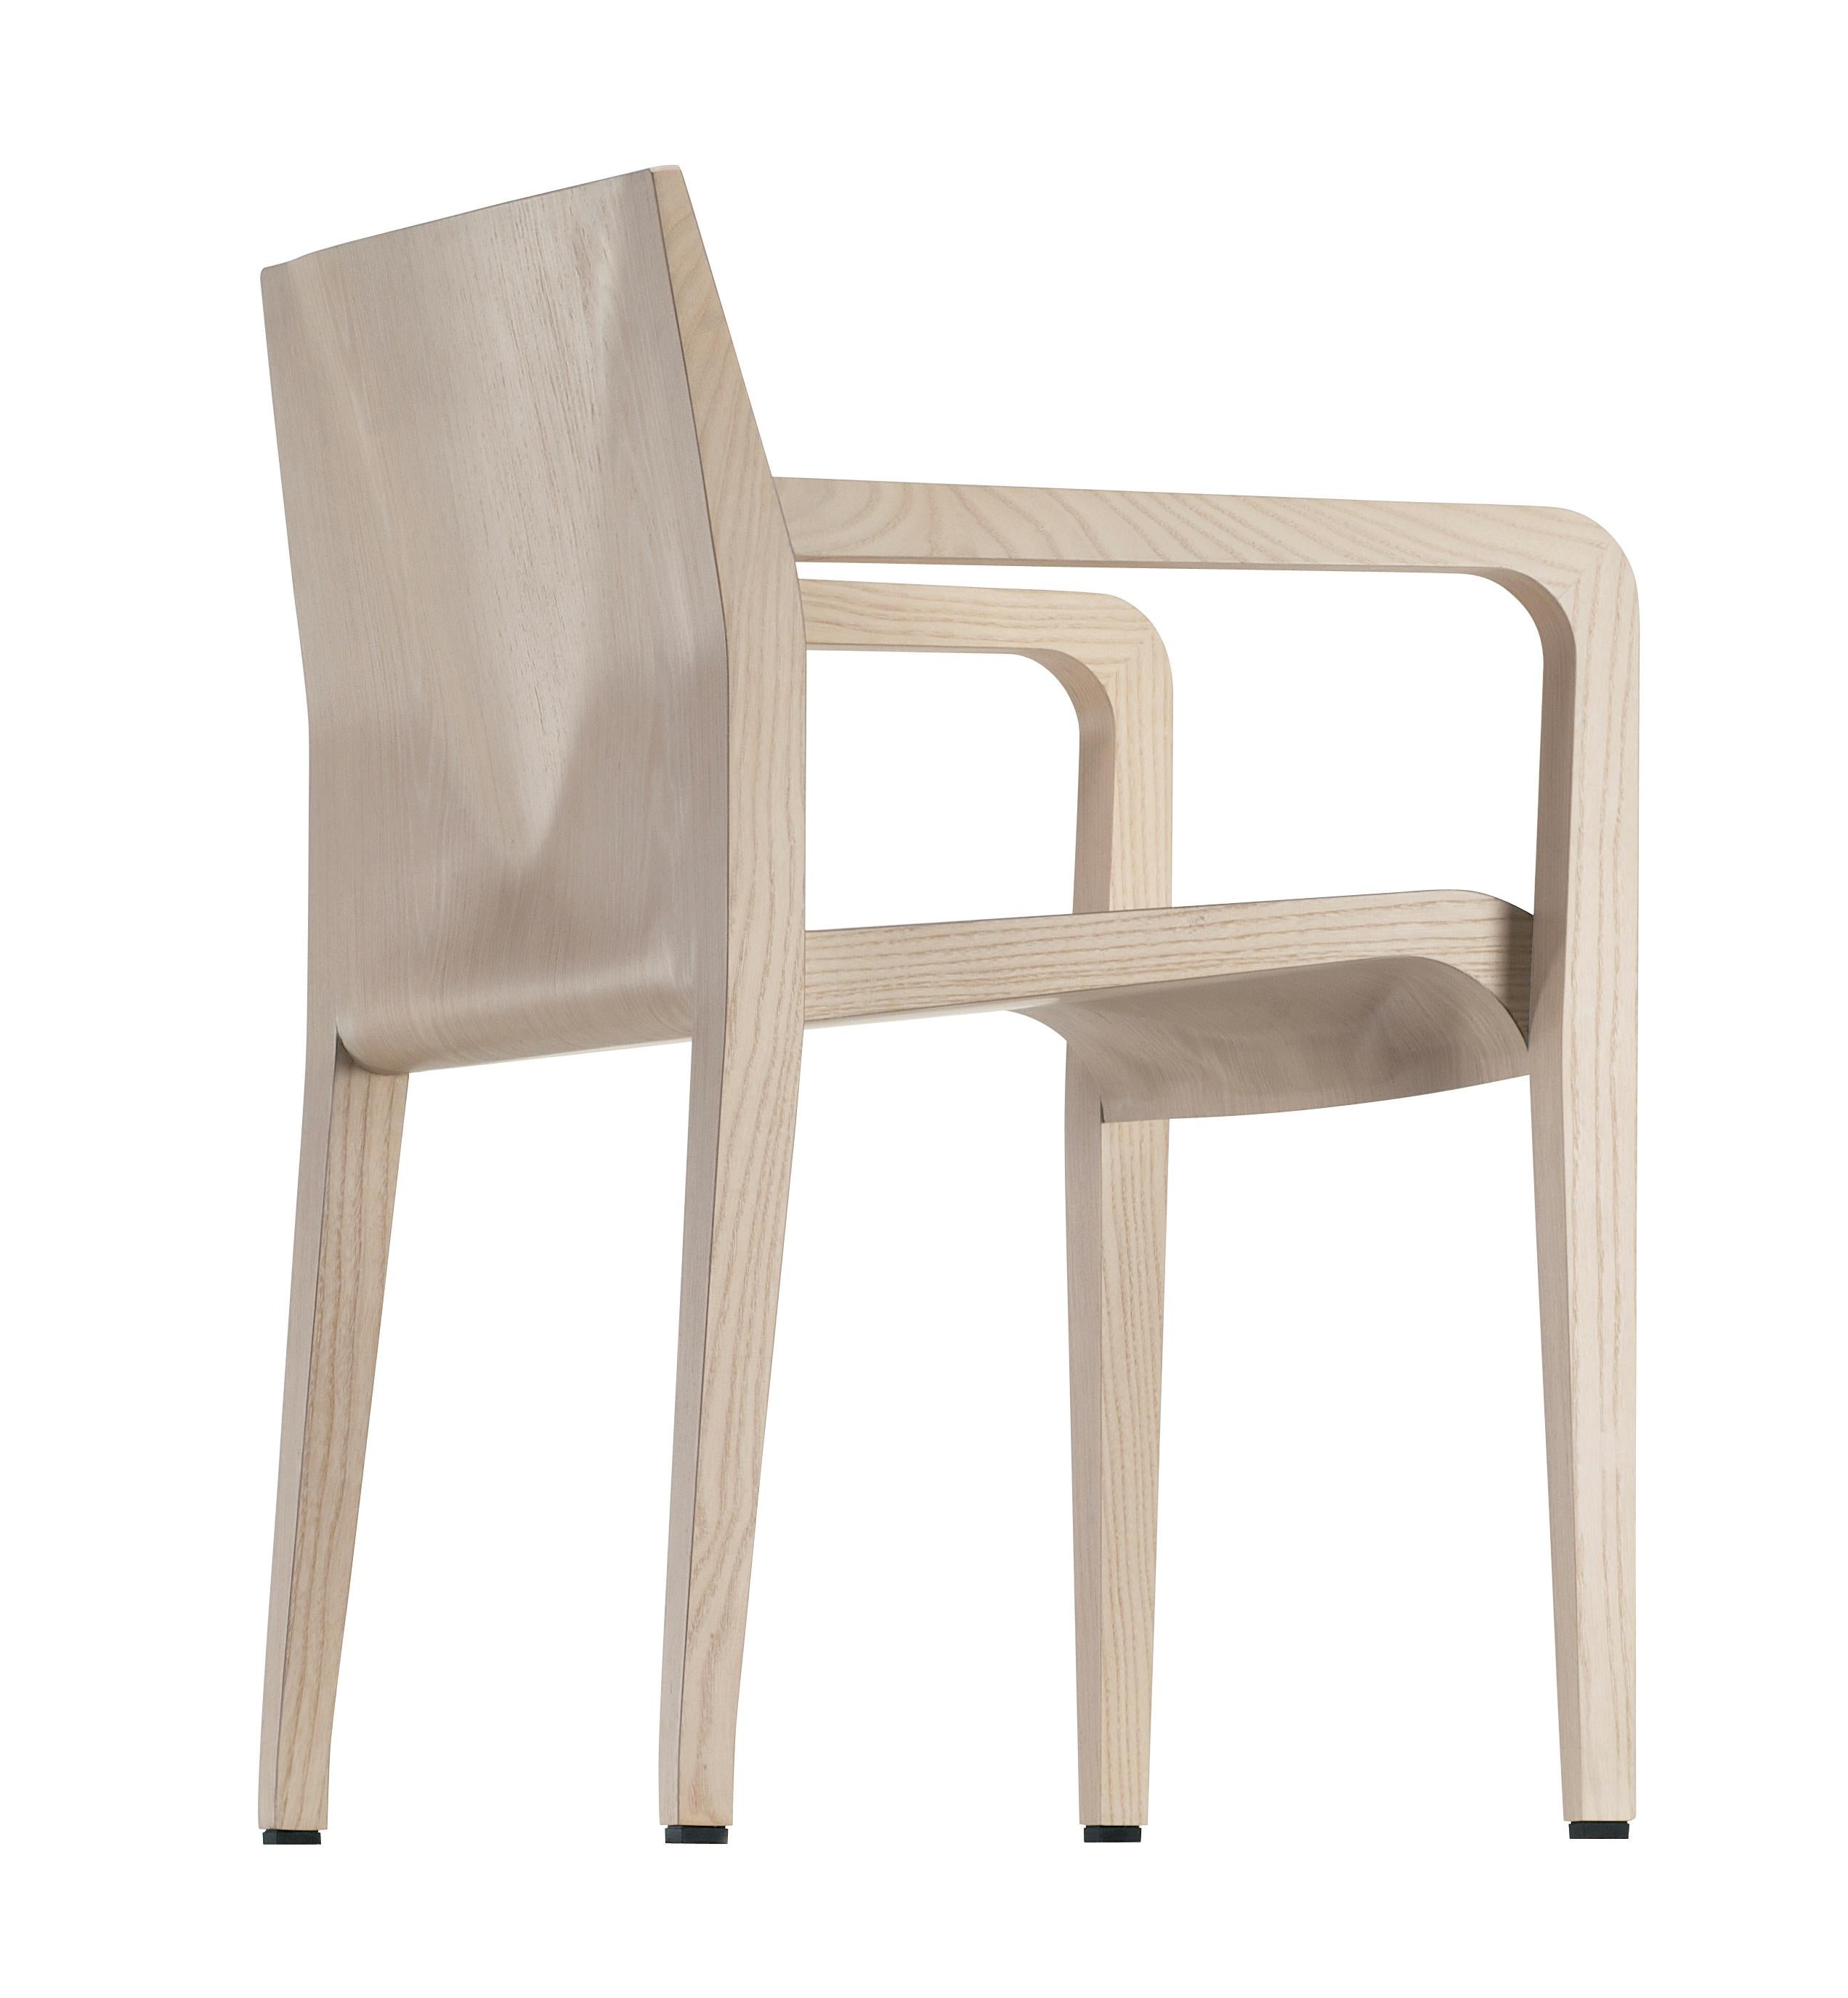 Italian Alias 304 Laleggera Armrest Chair in Whitened Oak Wood by Riccardo Blumer For Sale